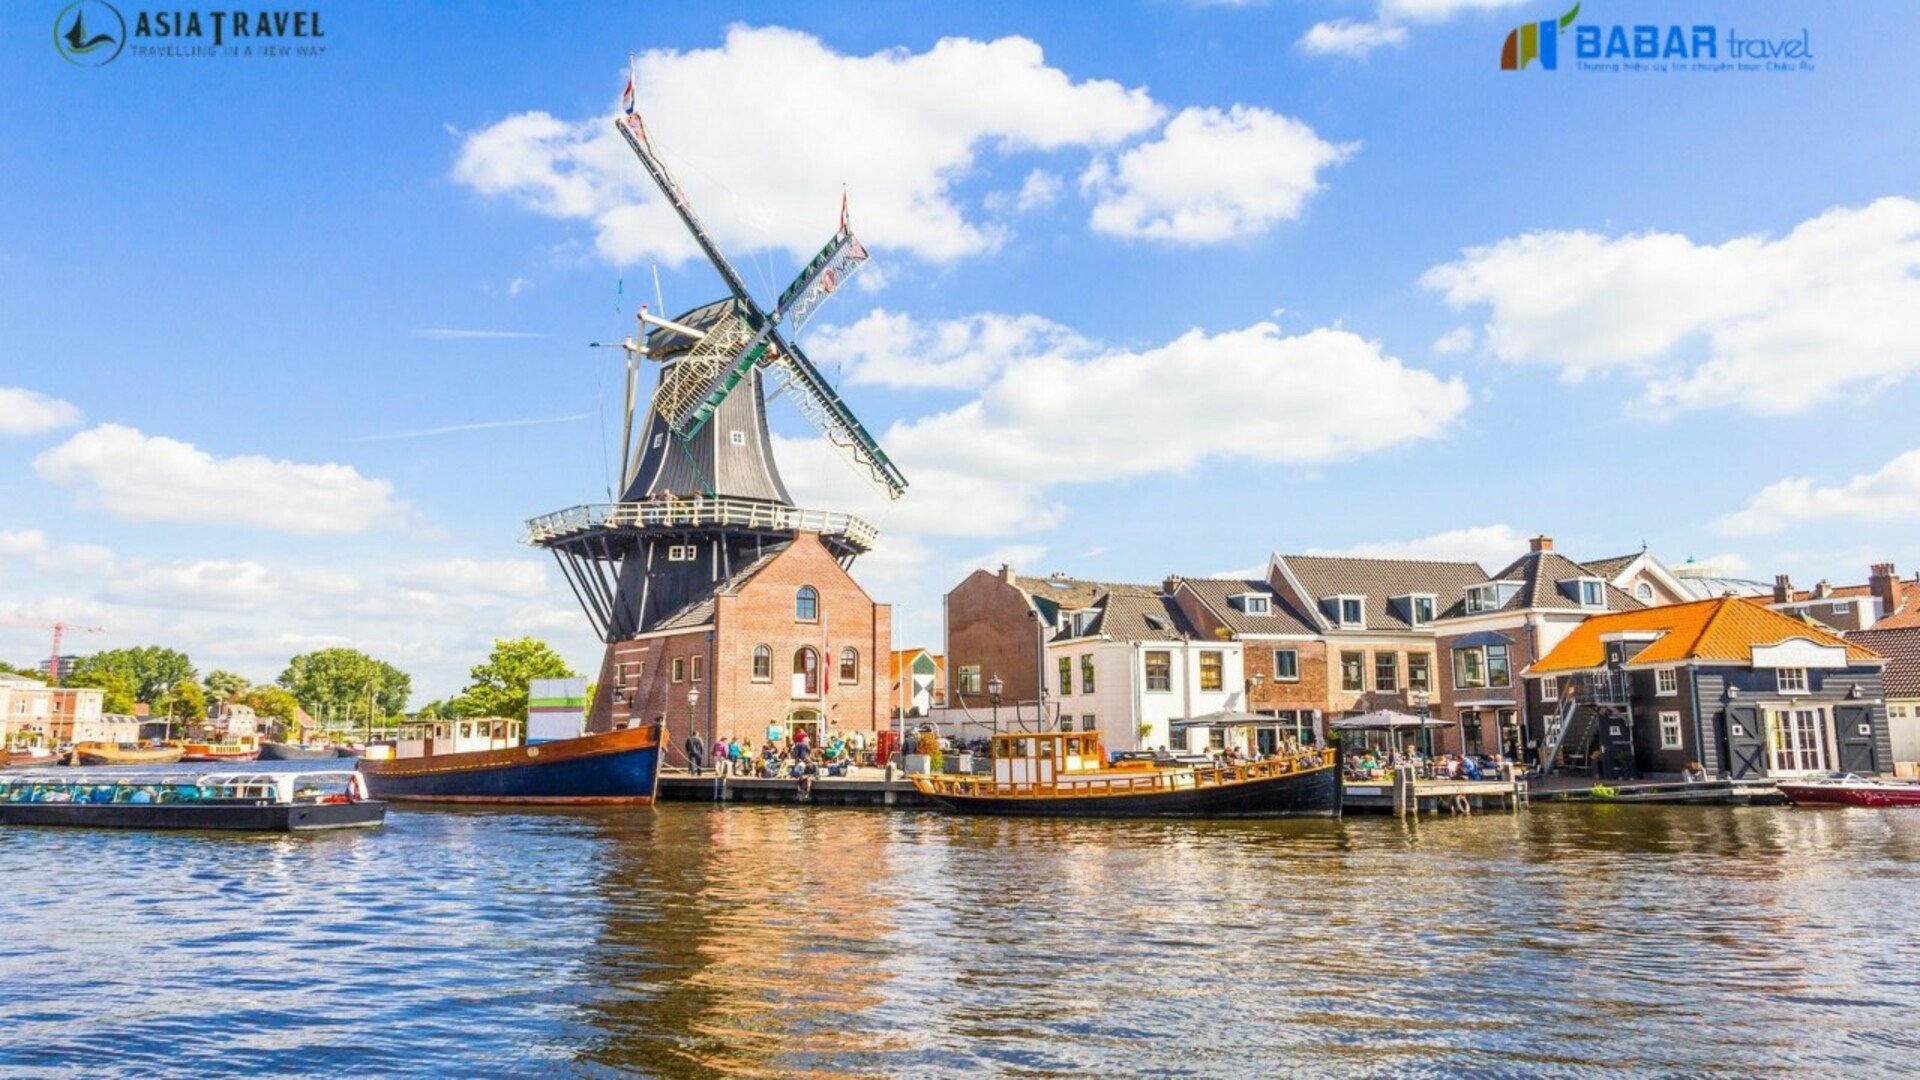 Bỏ túi kinh nghiệm du lịch Haarlem - Thành phố tuyệt đẹp của Hà Lan